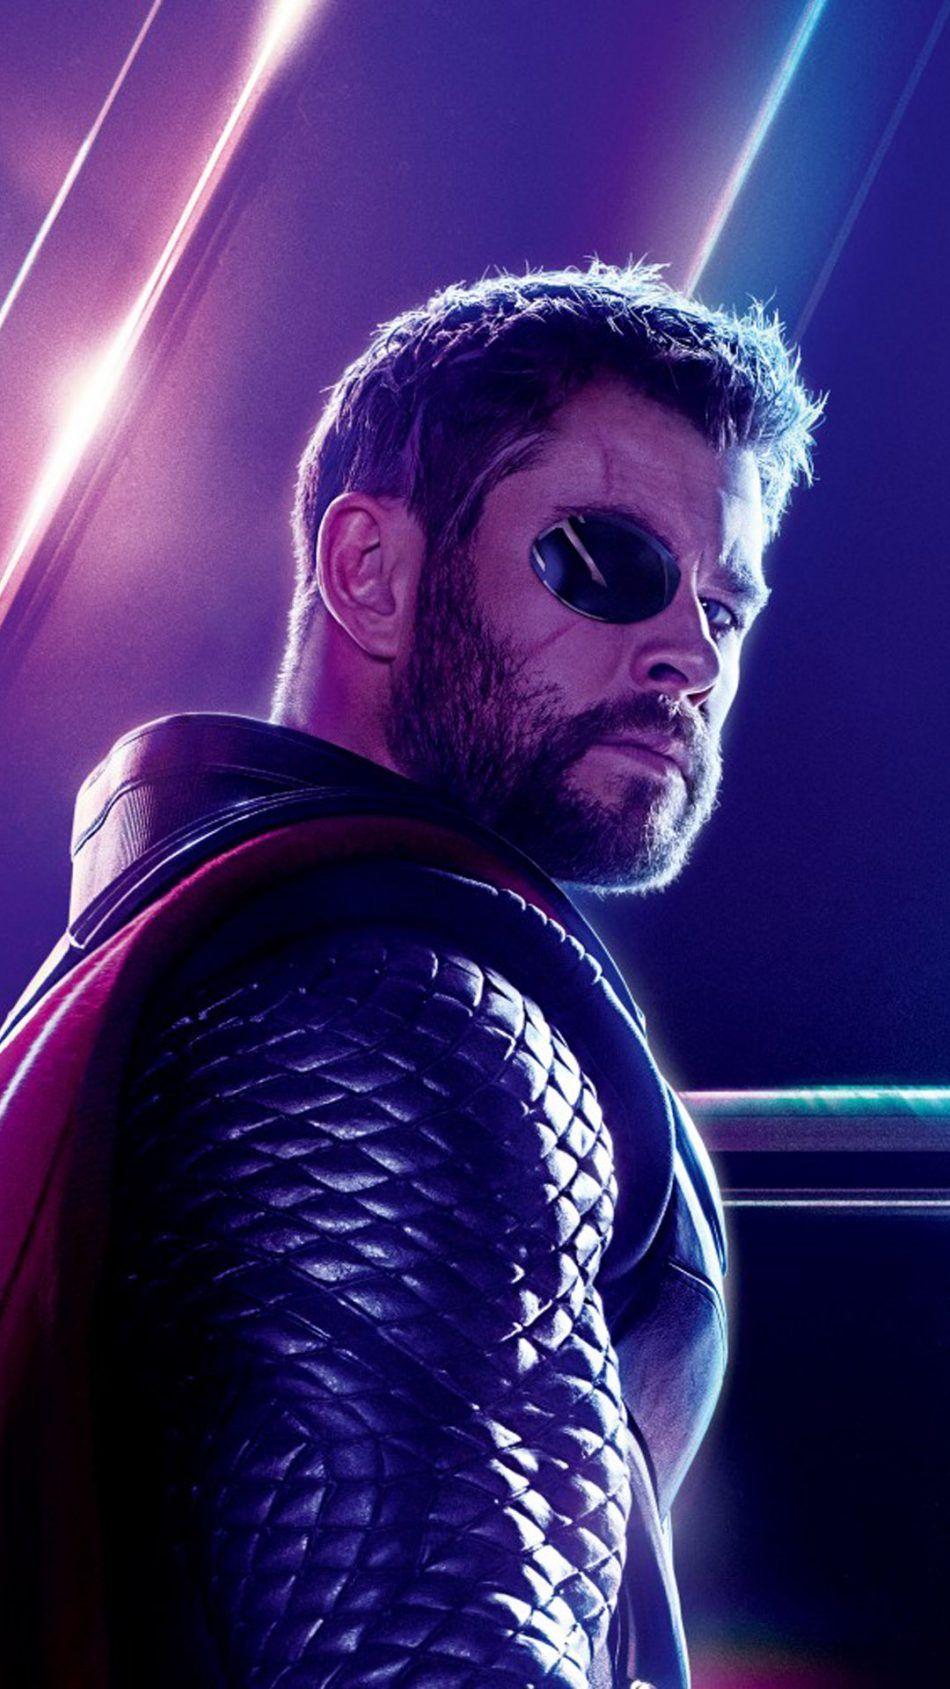 Thor In Avengers Infinity War. Thor wallpaper, Avengers wallpaper